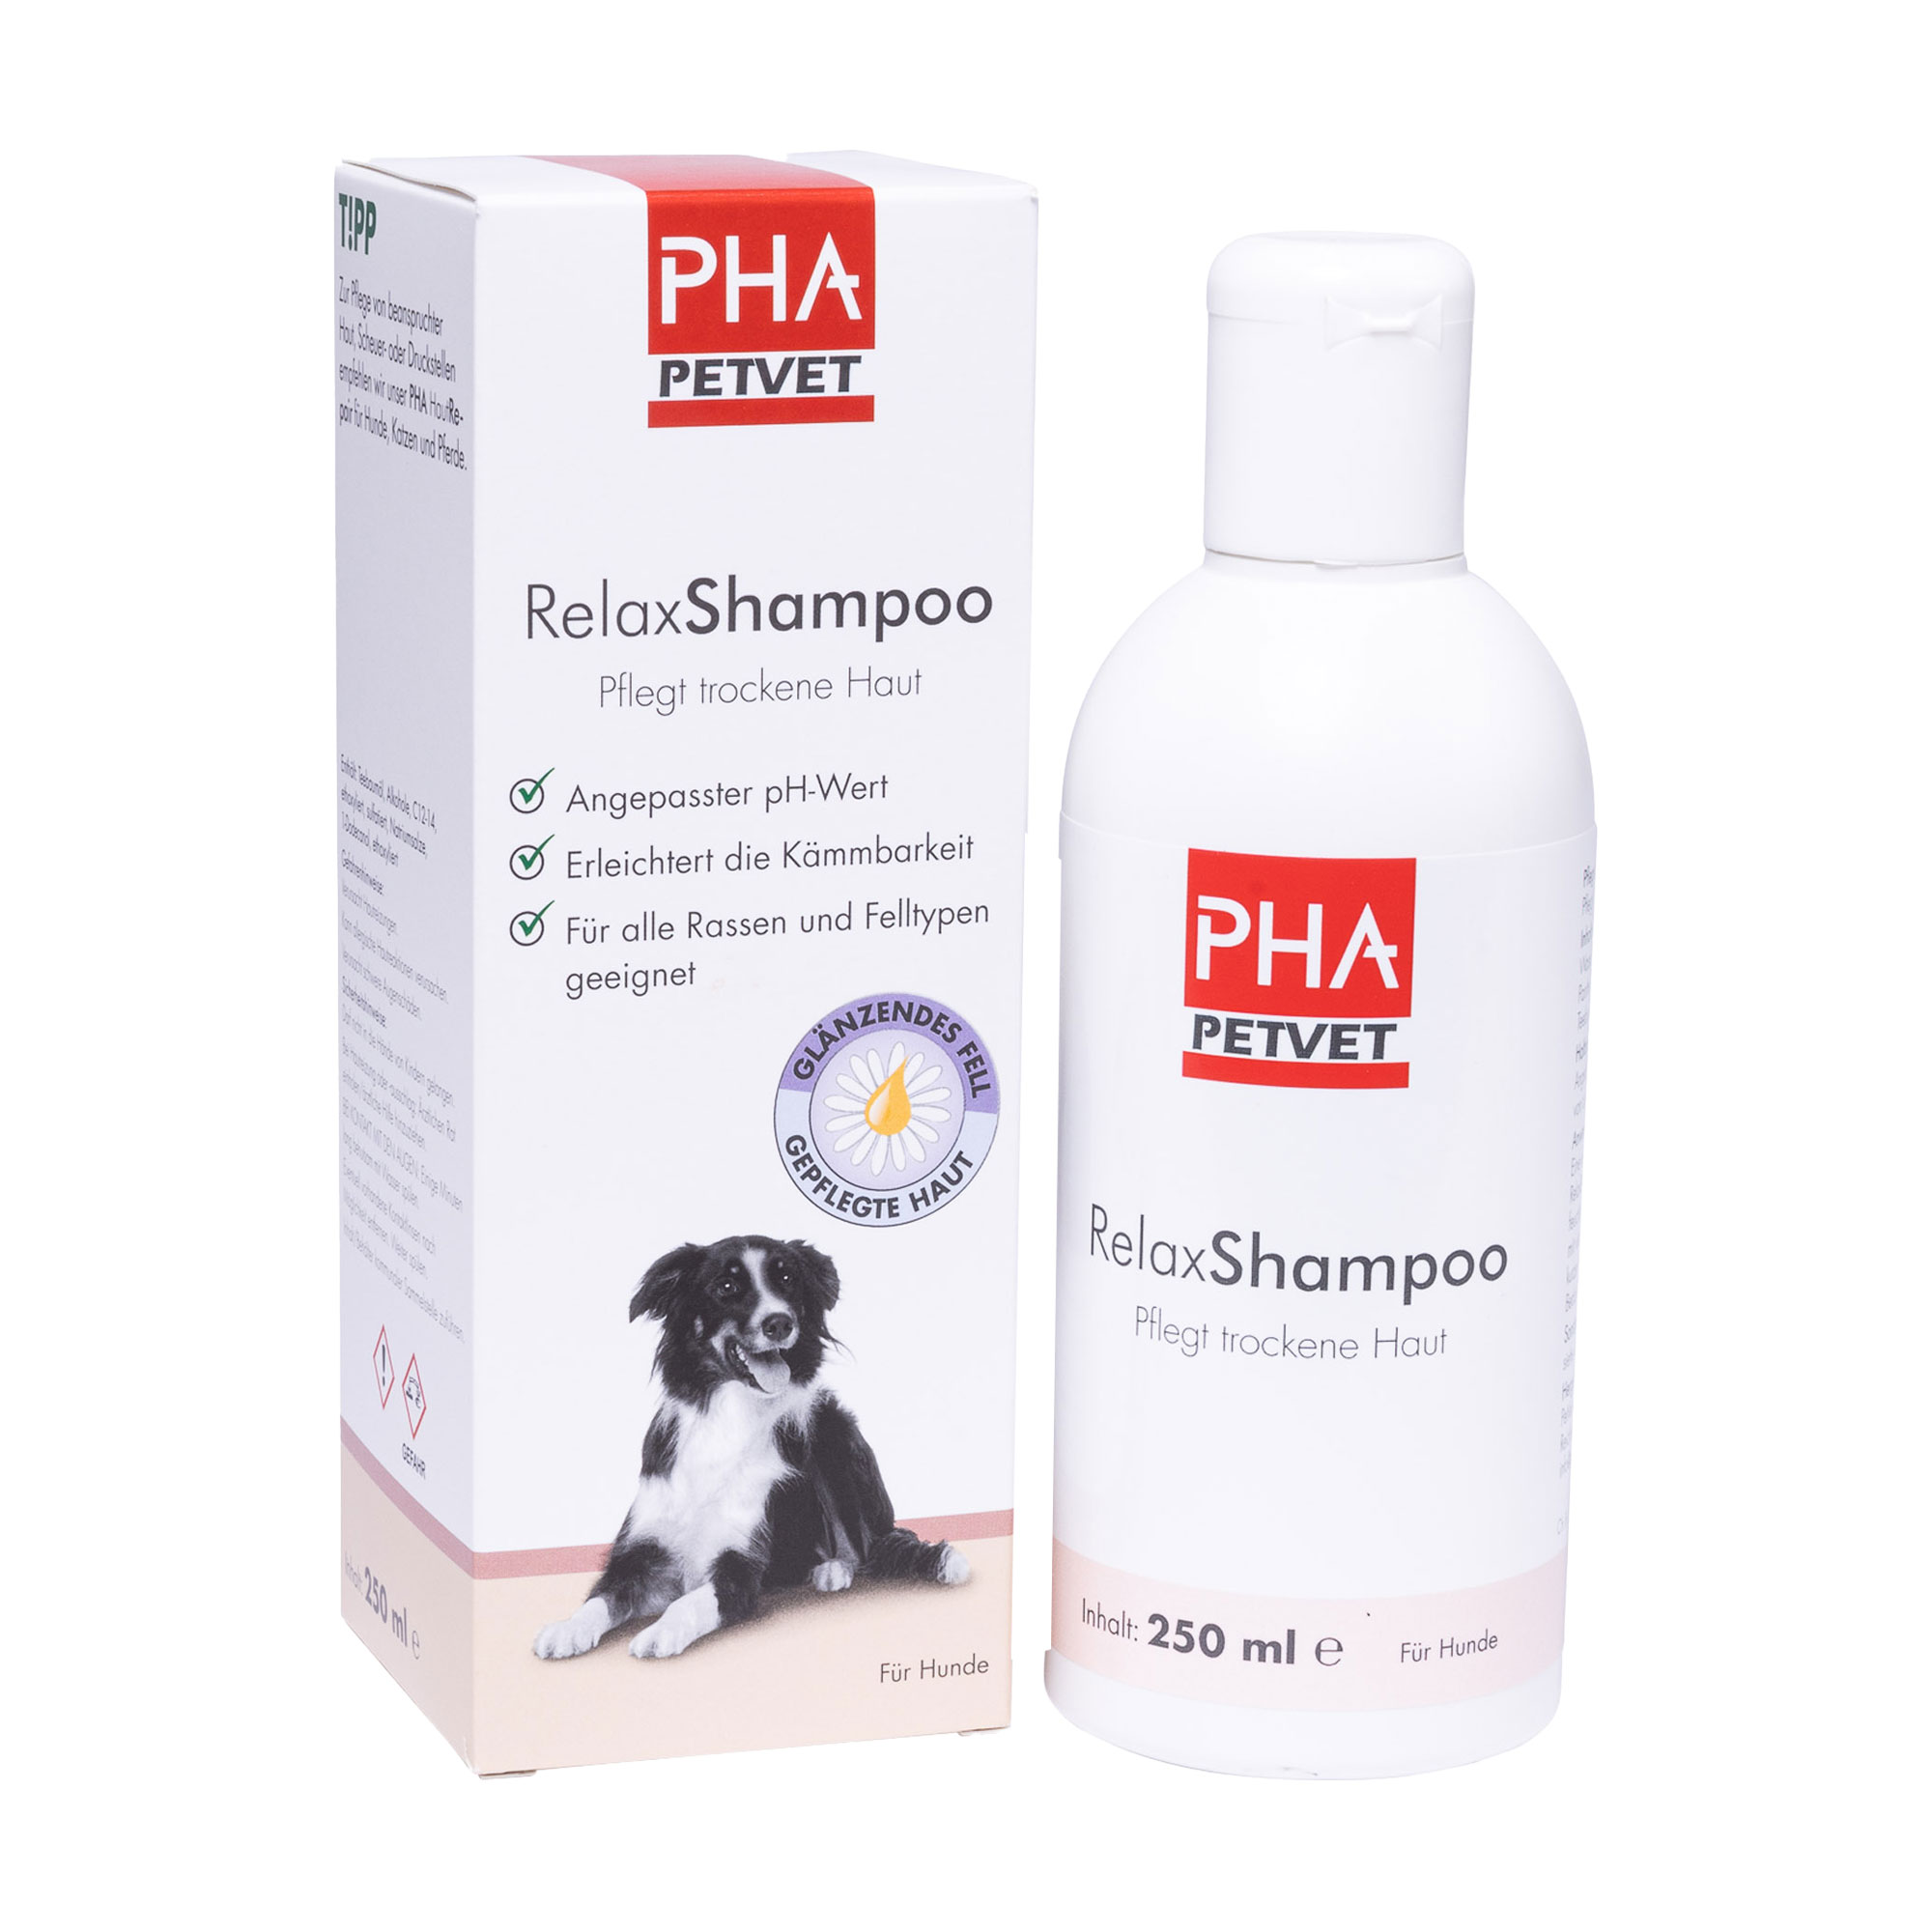 Hundeshampoo mit angepasstem pH-Wert zur Pflege trockener Haut.